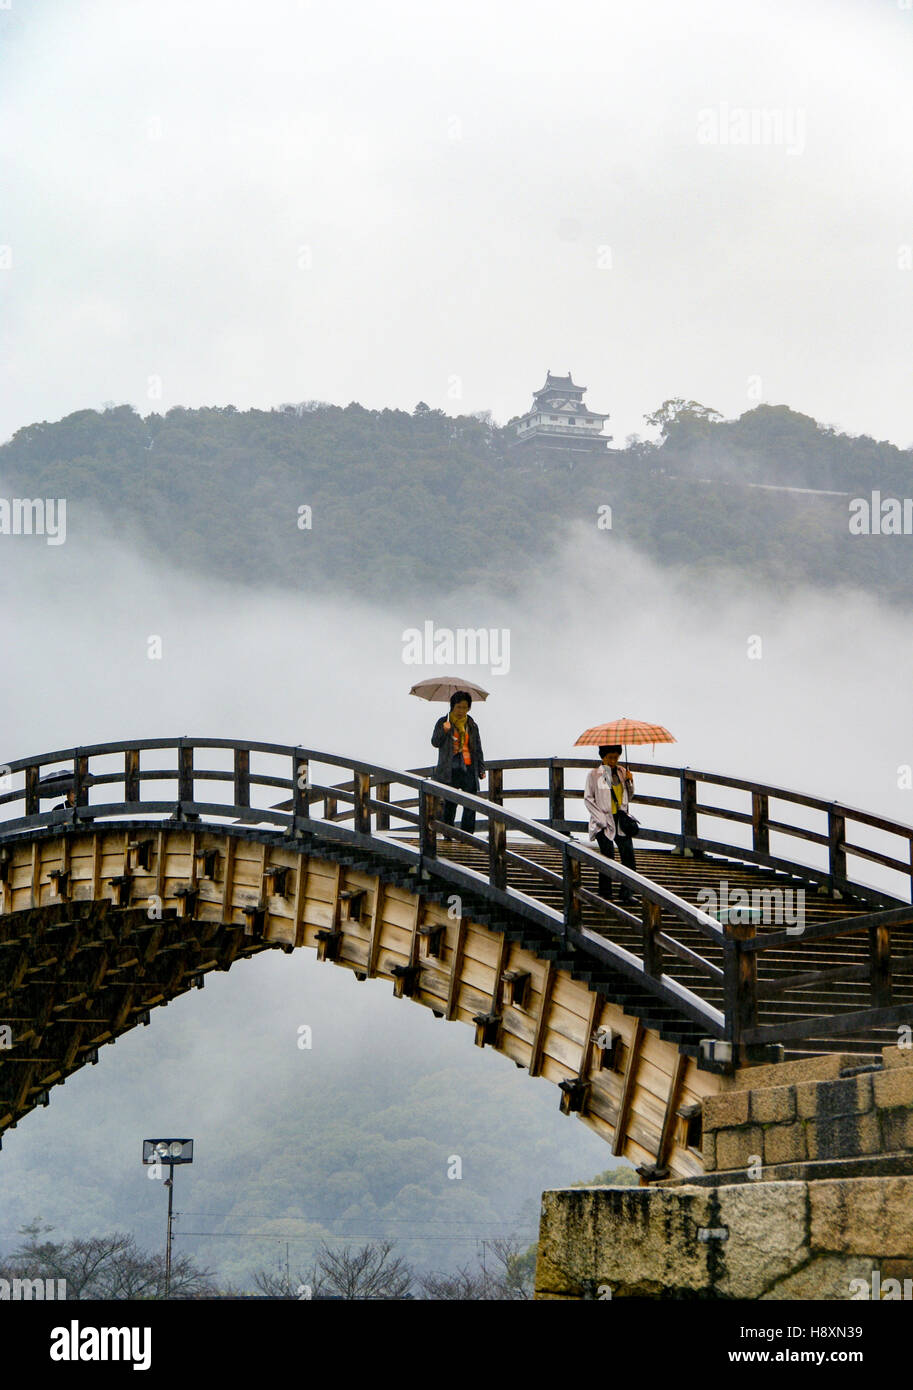 Diese wunderschöne klassische traditionelle gewölbte Brücke in Japan ist die Kintai-Brücke oder Kintai. Stockfoto